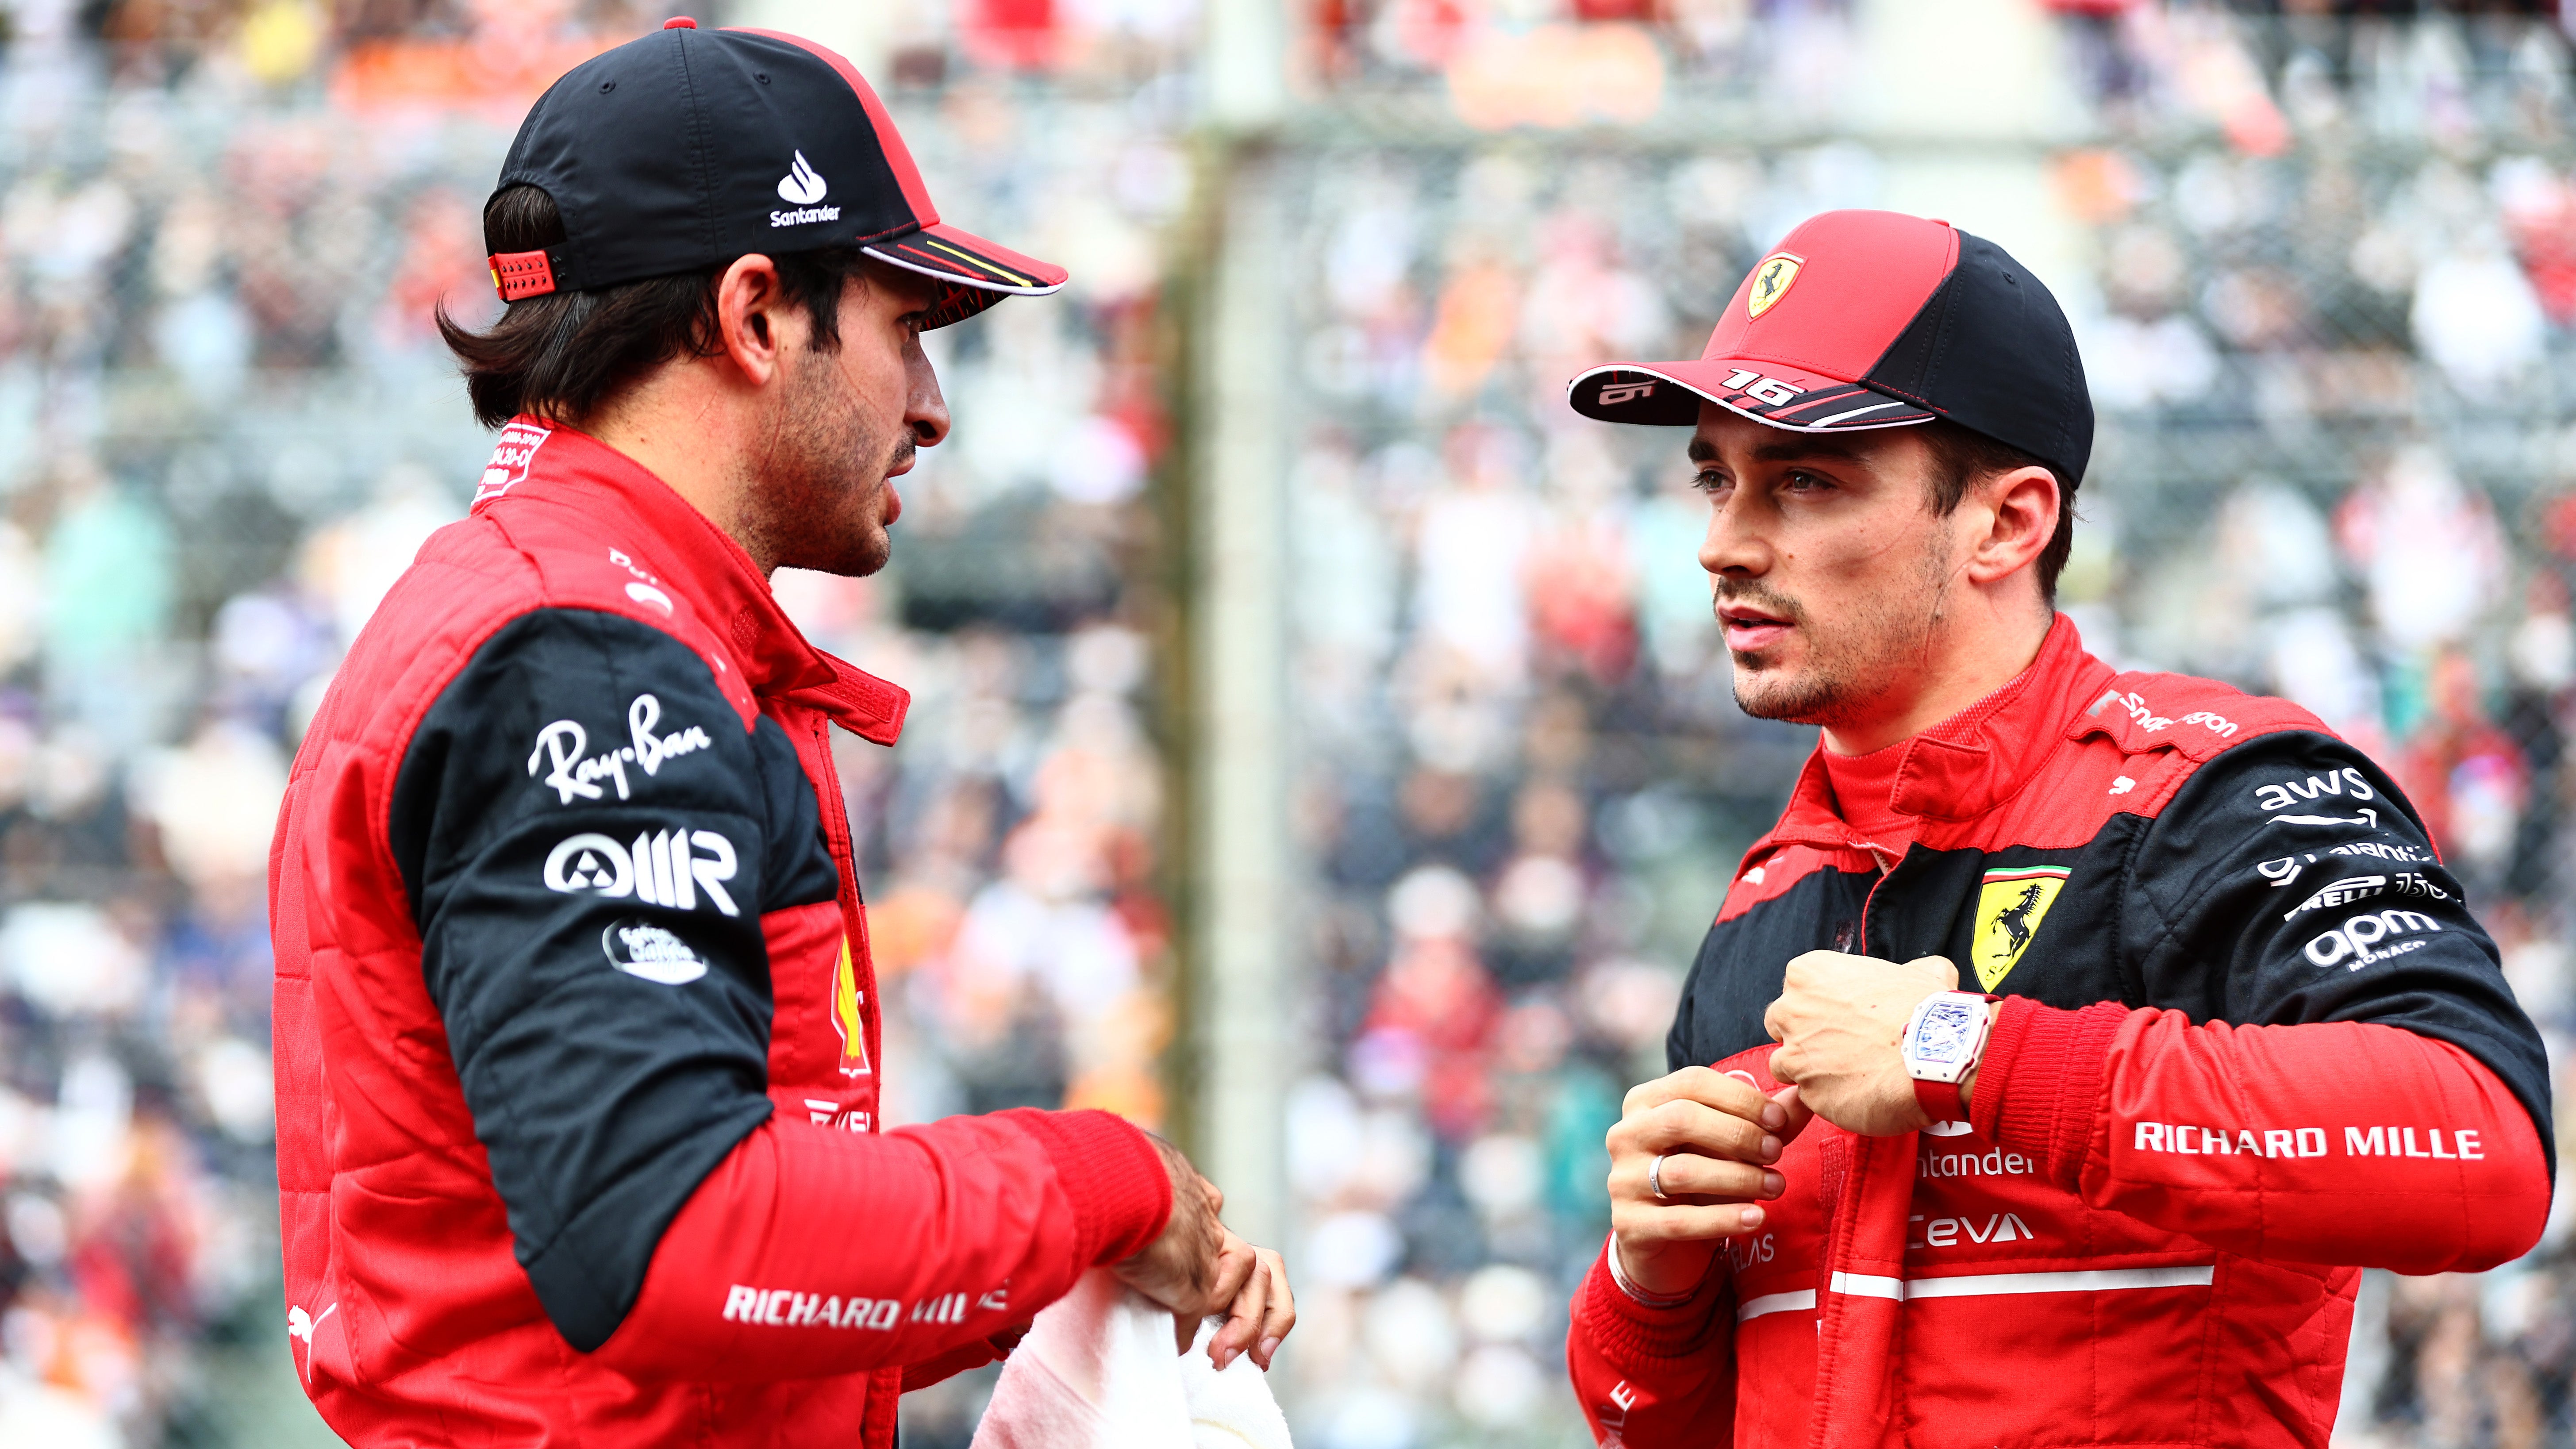 It’s been a tough F1 season so far for both Sainz and Ferrari team-mate Charles Leclerc